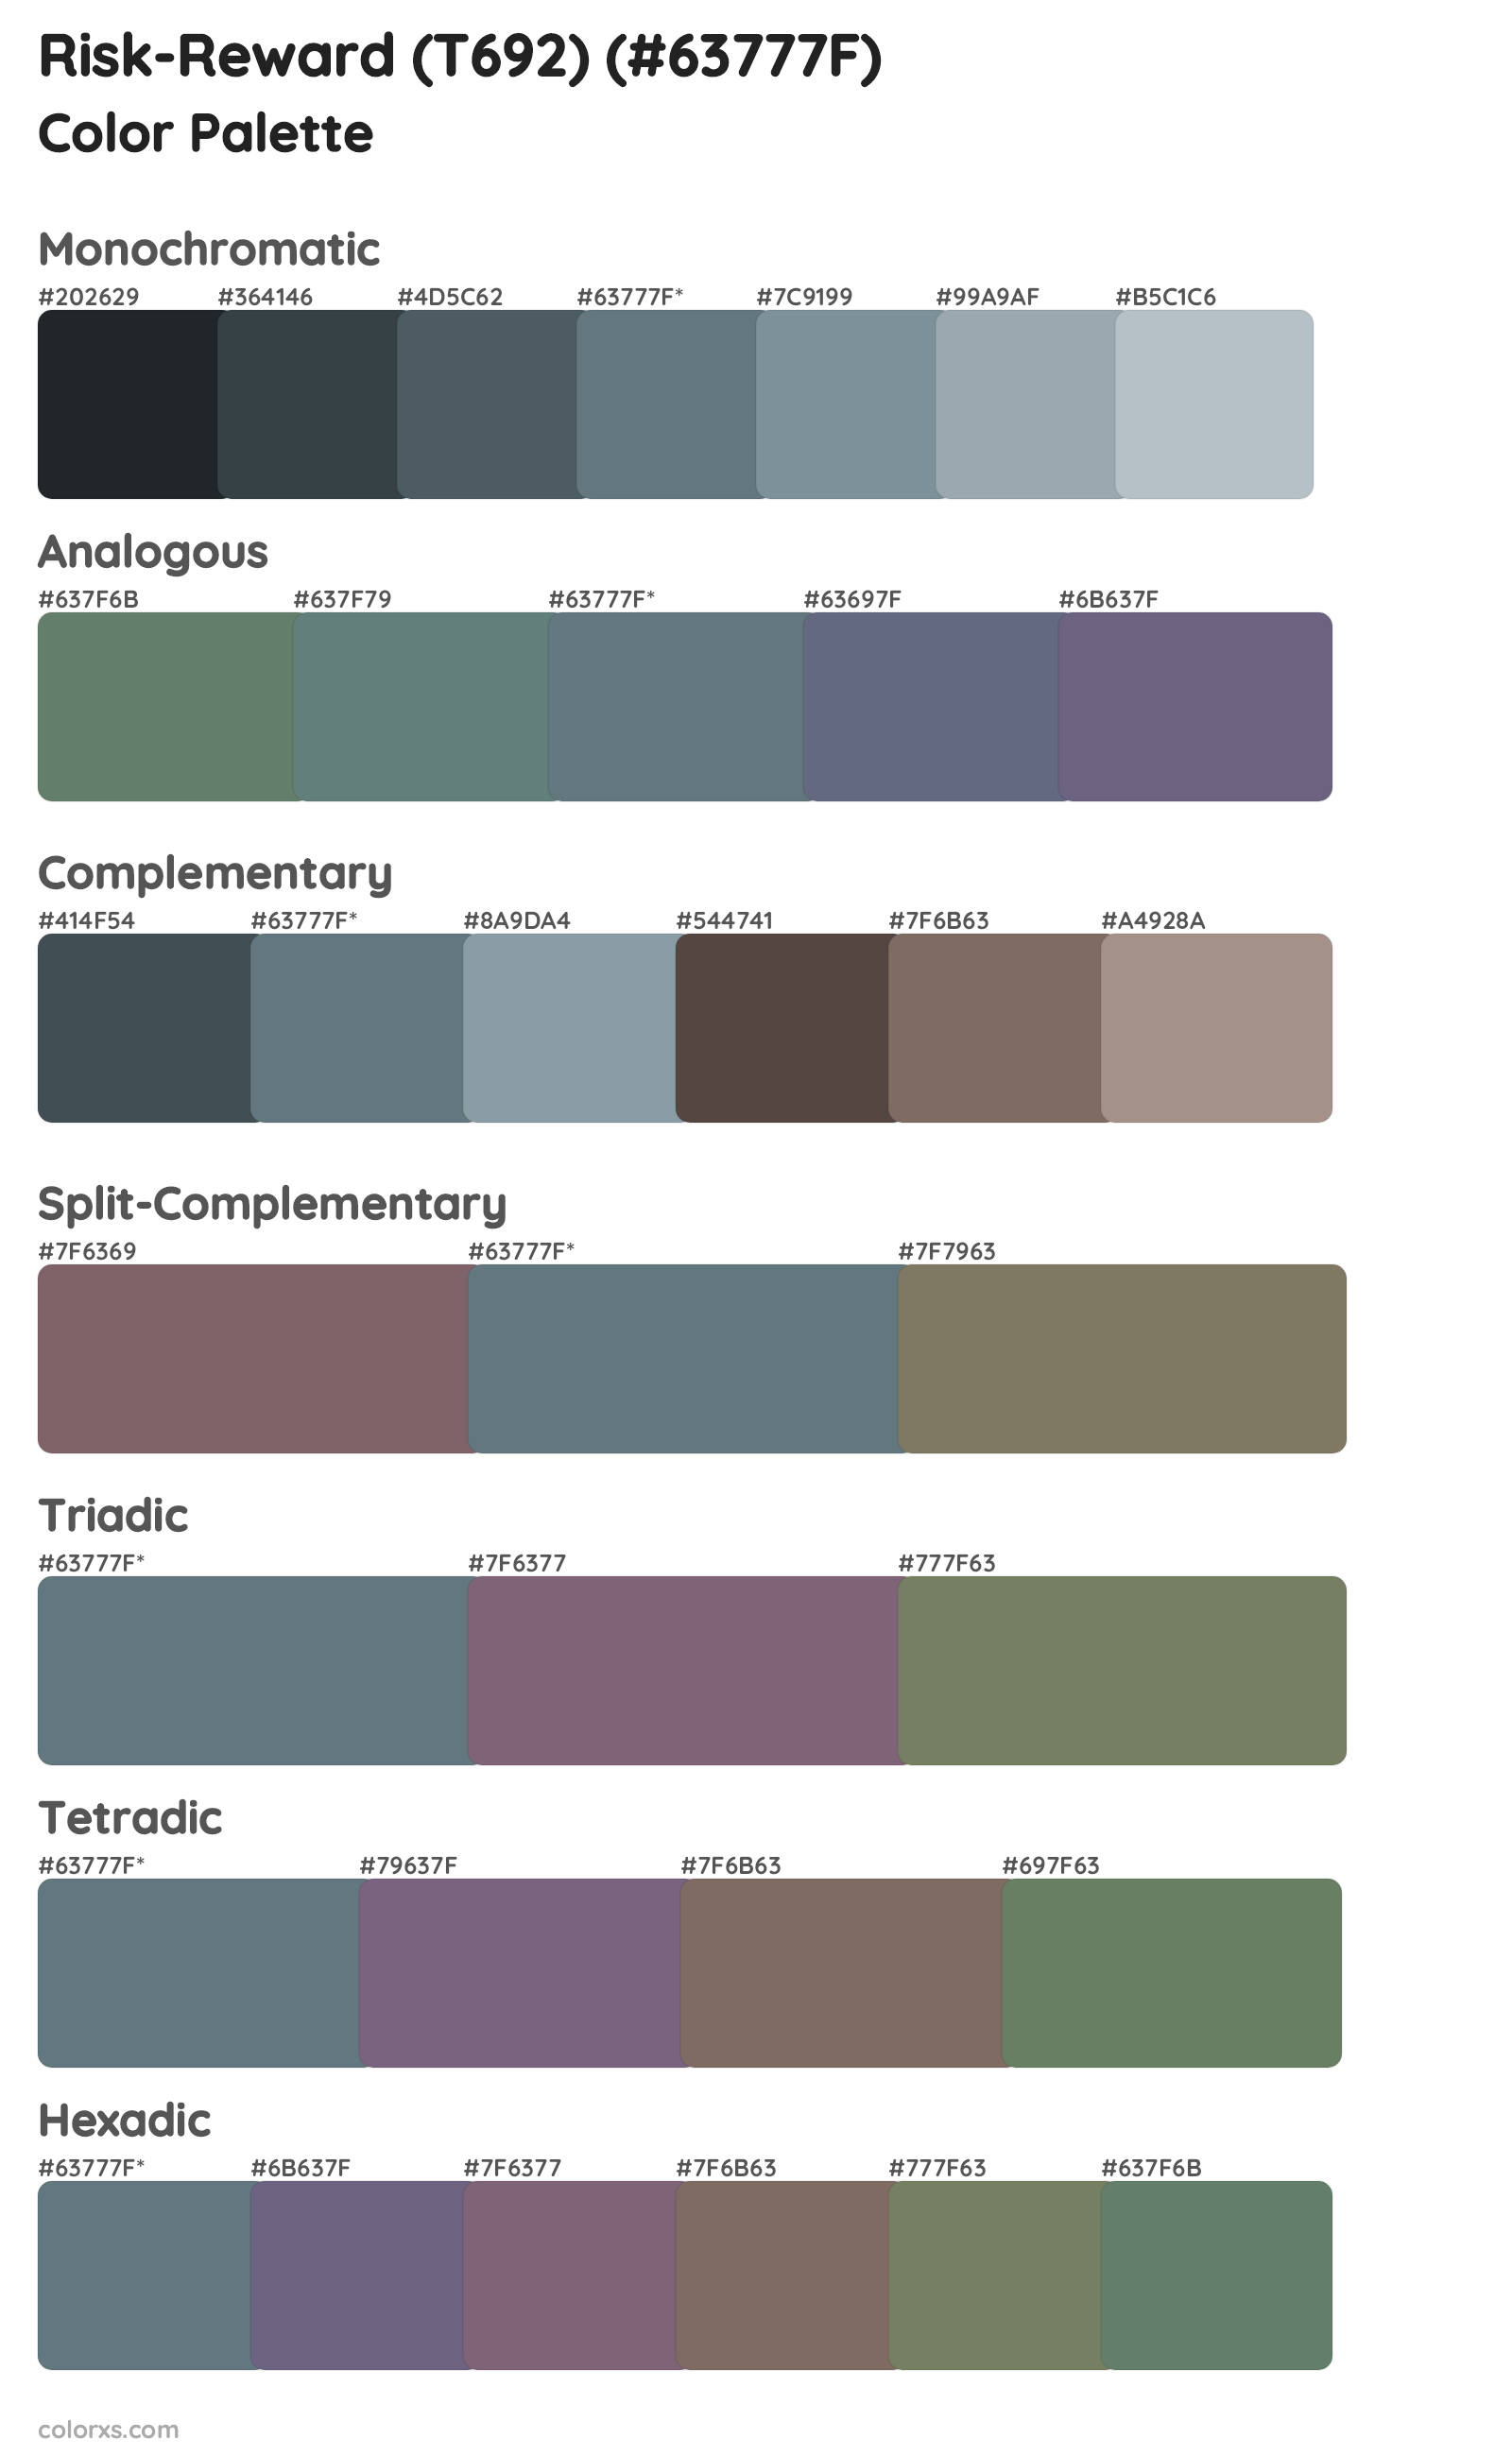 Risk-Reward (T692) Color Scheme Palettes